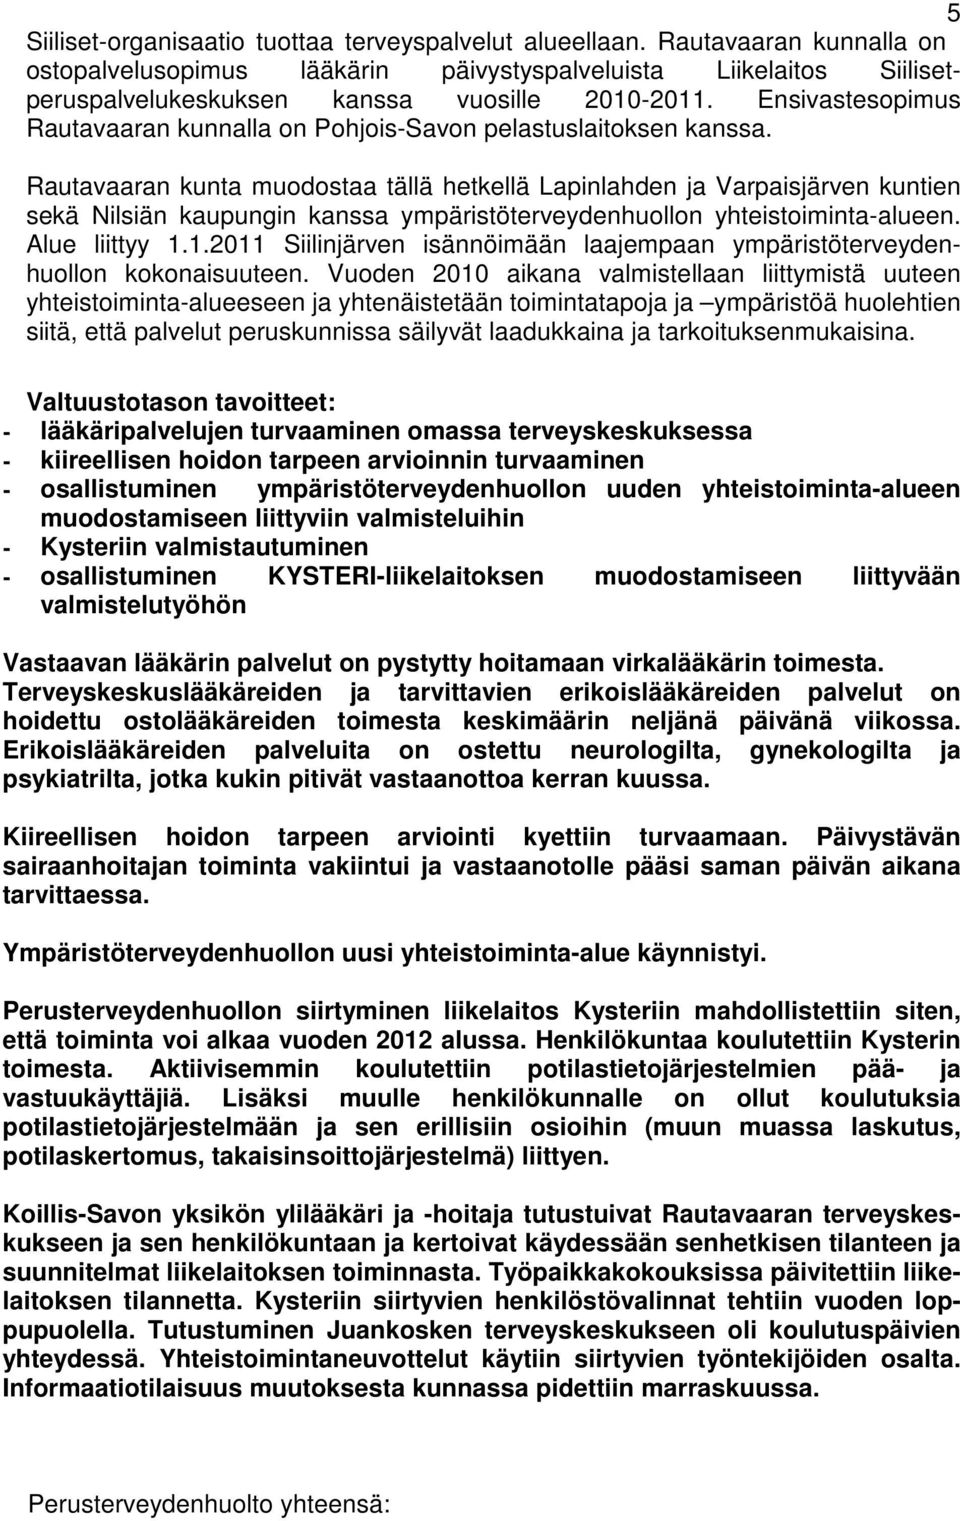 Ensivastesopimus Rautavaaran kunnalla on Pohjois-Savon pelastuslaitoksen kanssa.